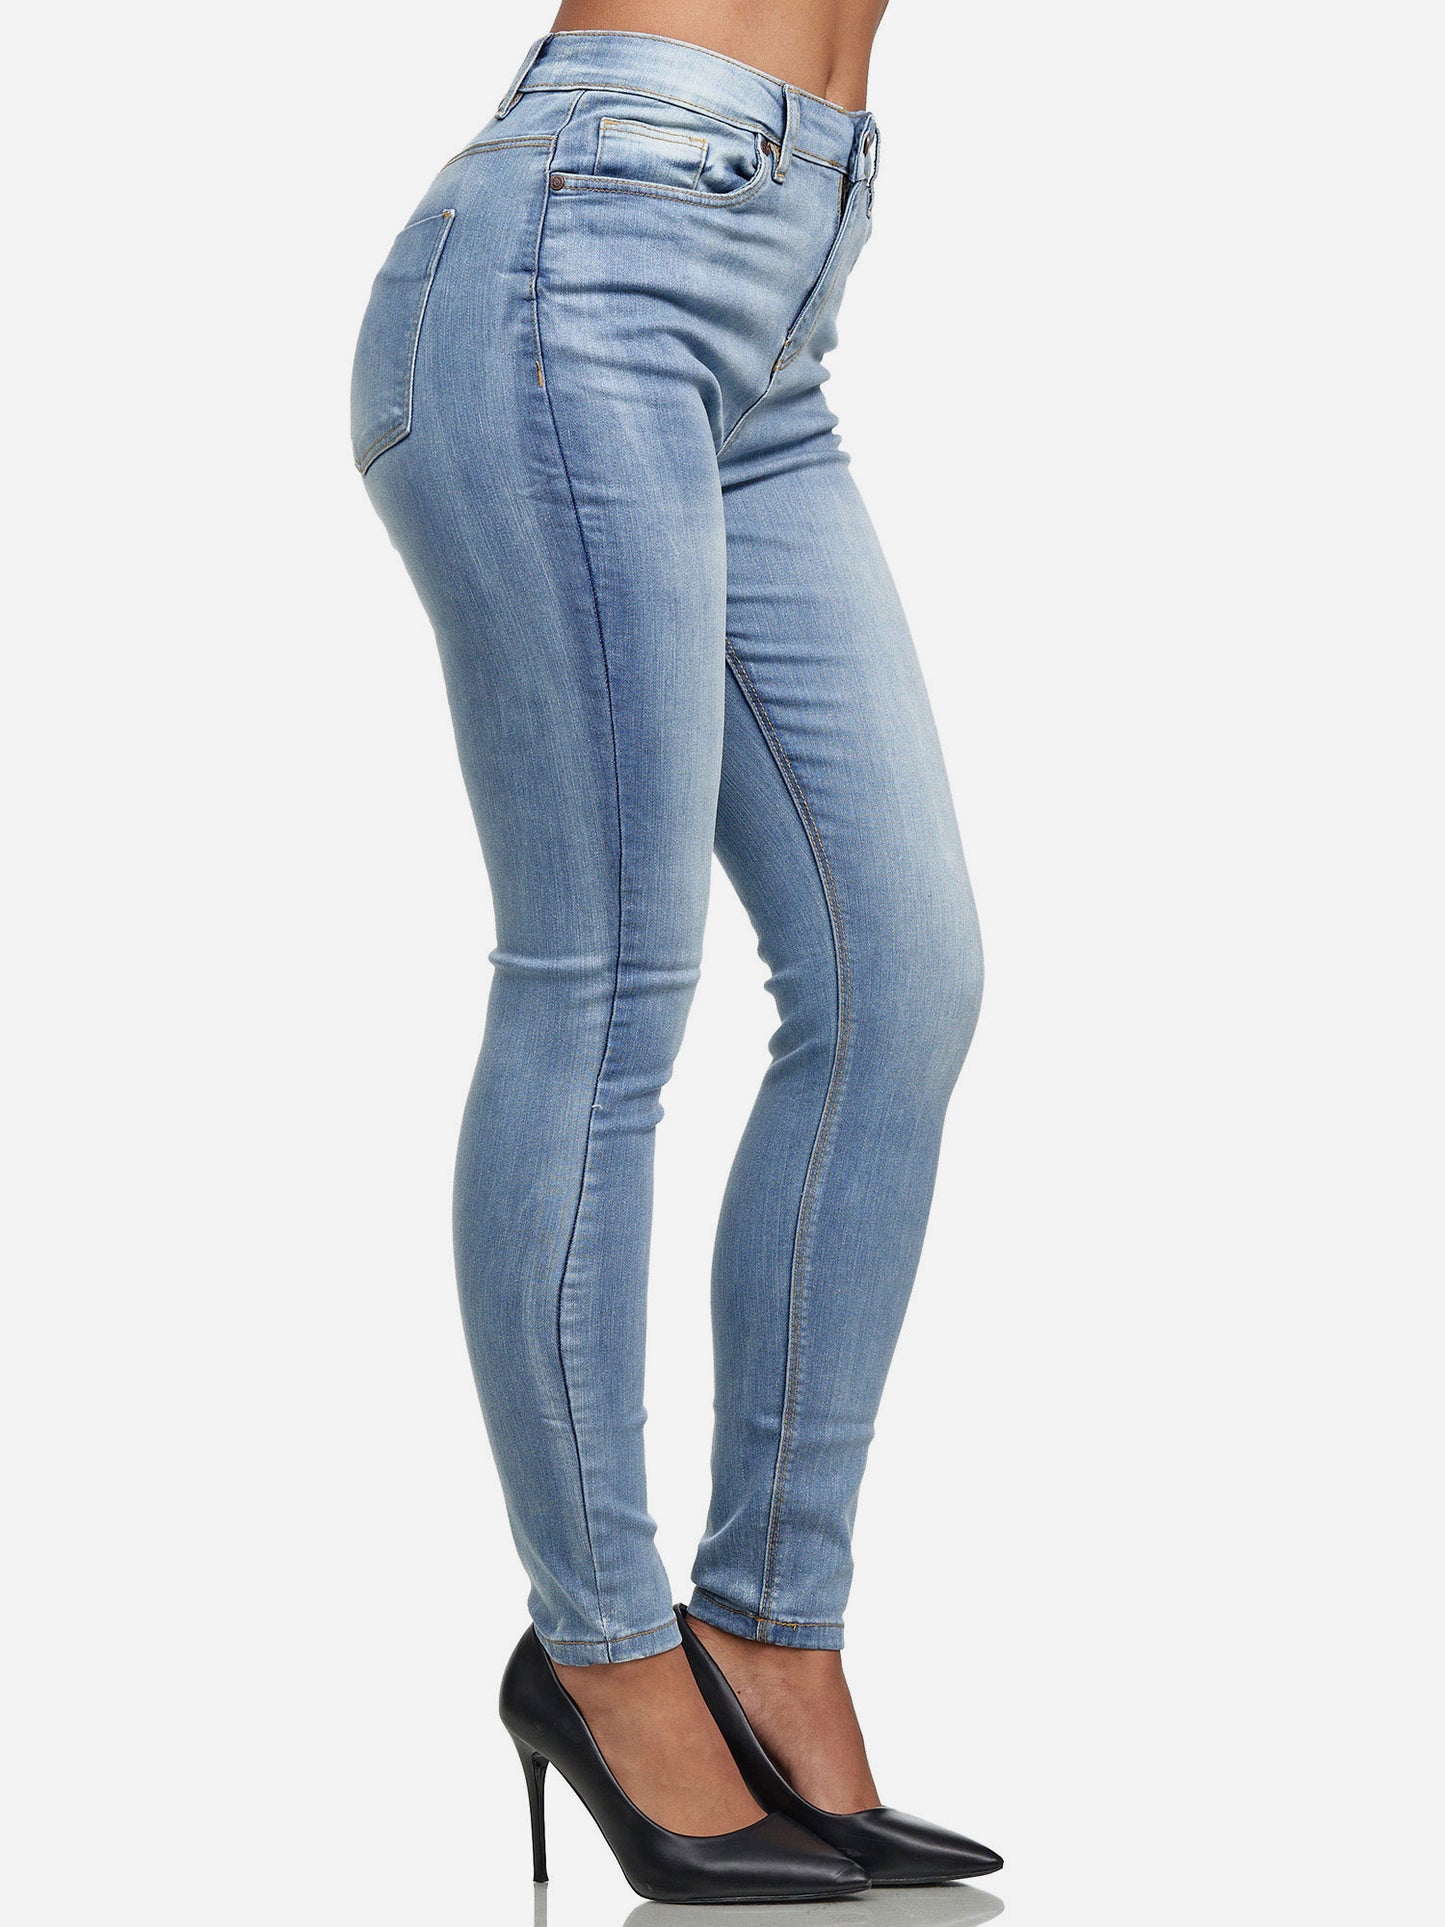 Tazzio Damen Skinny Fit High Waist Jeans F101